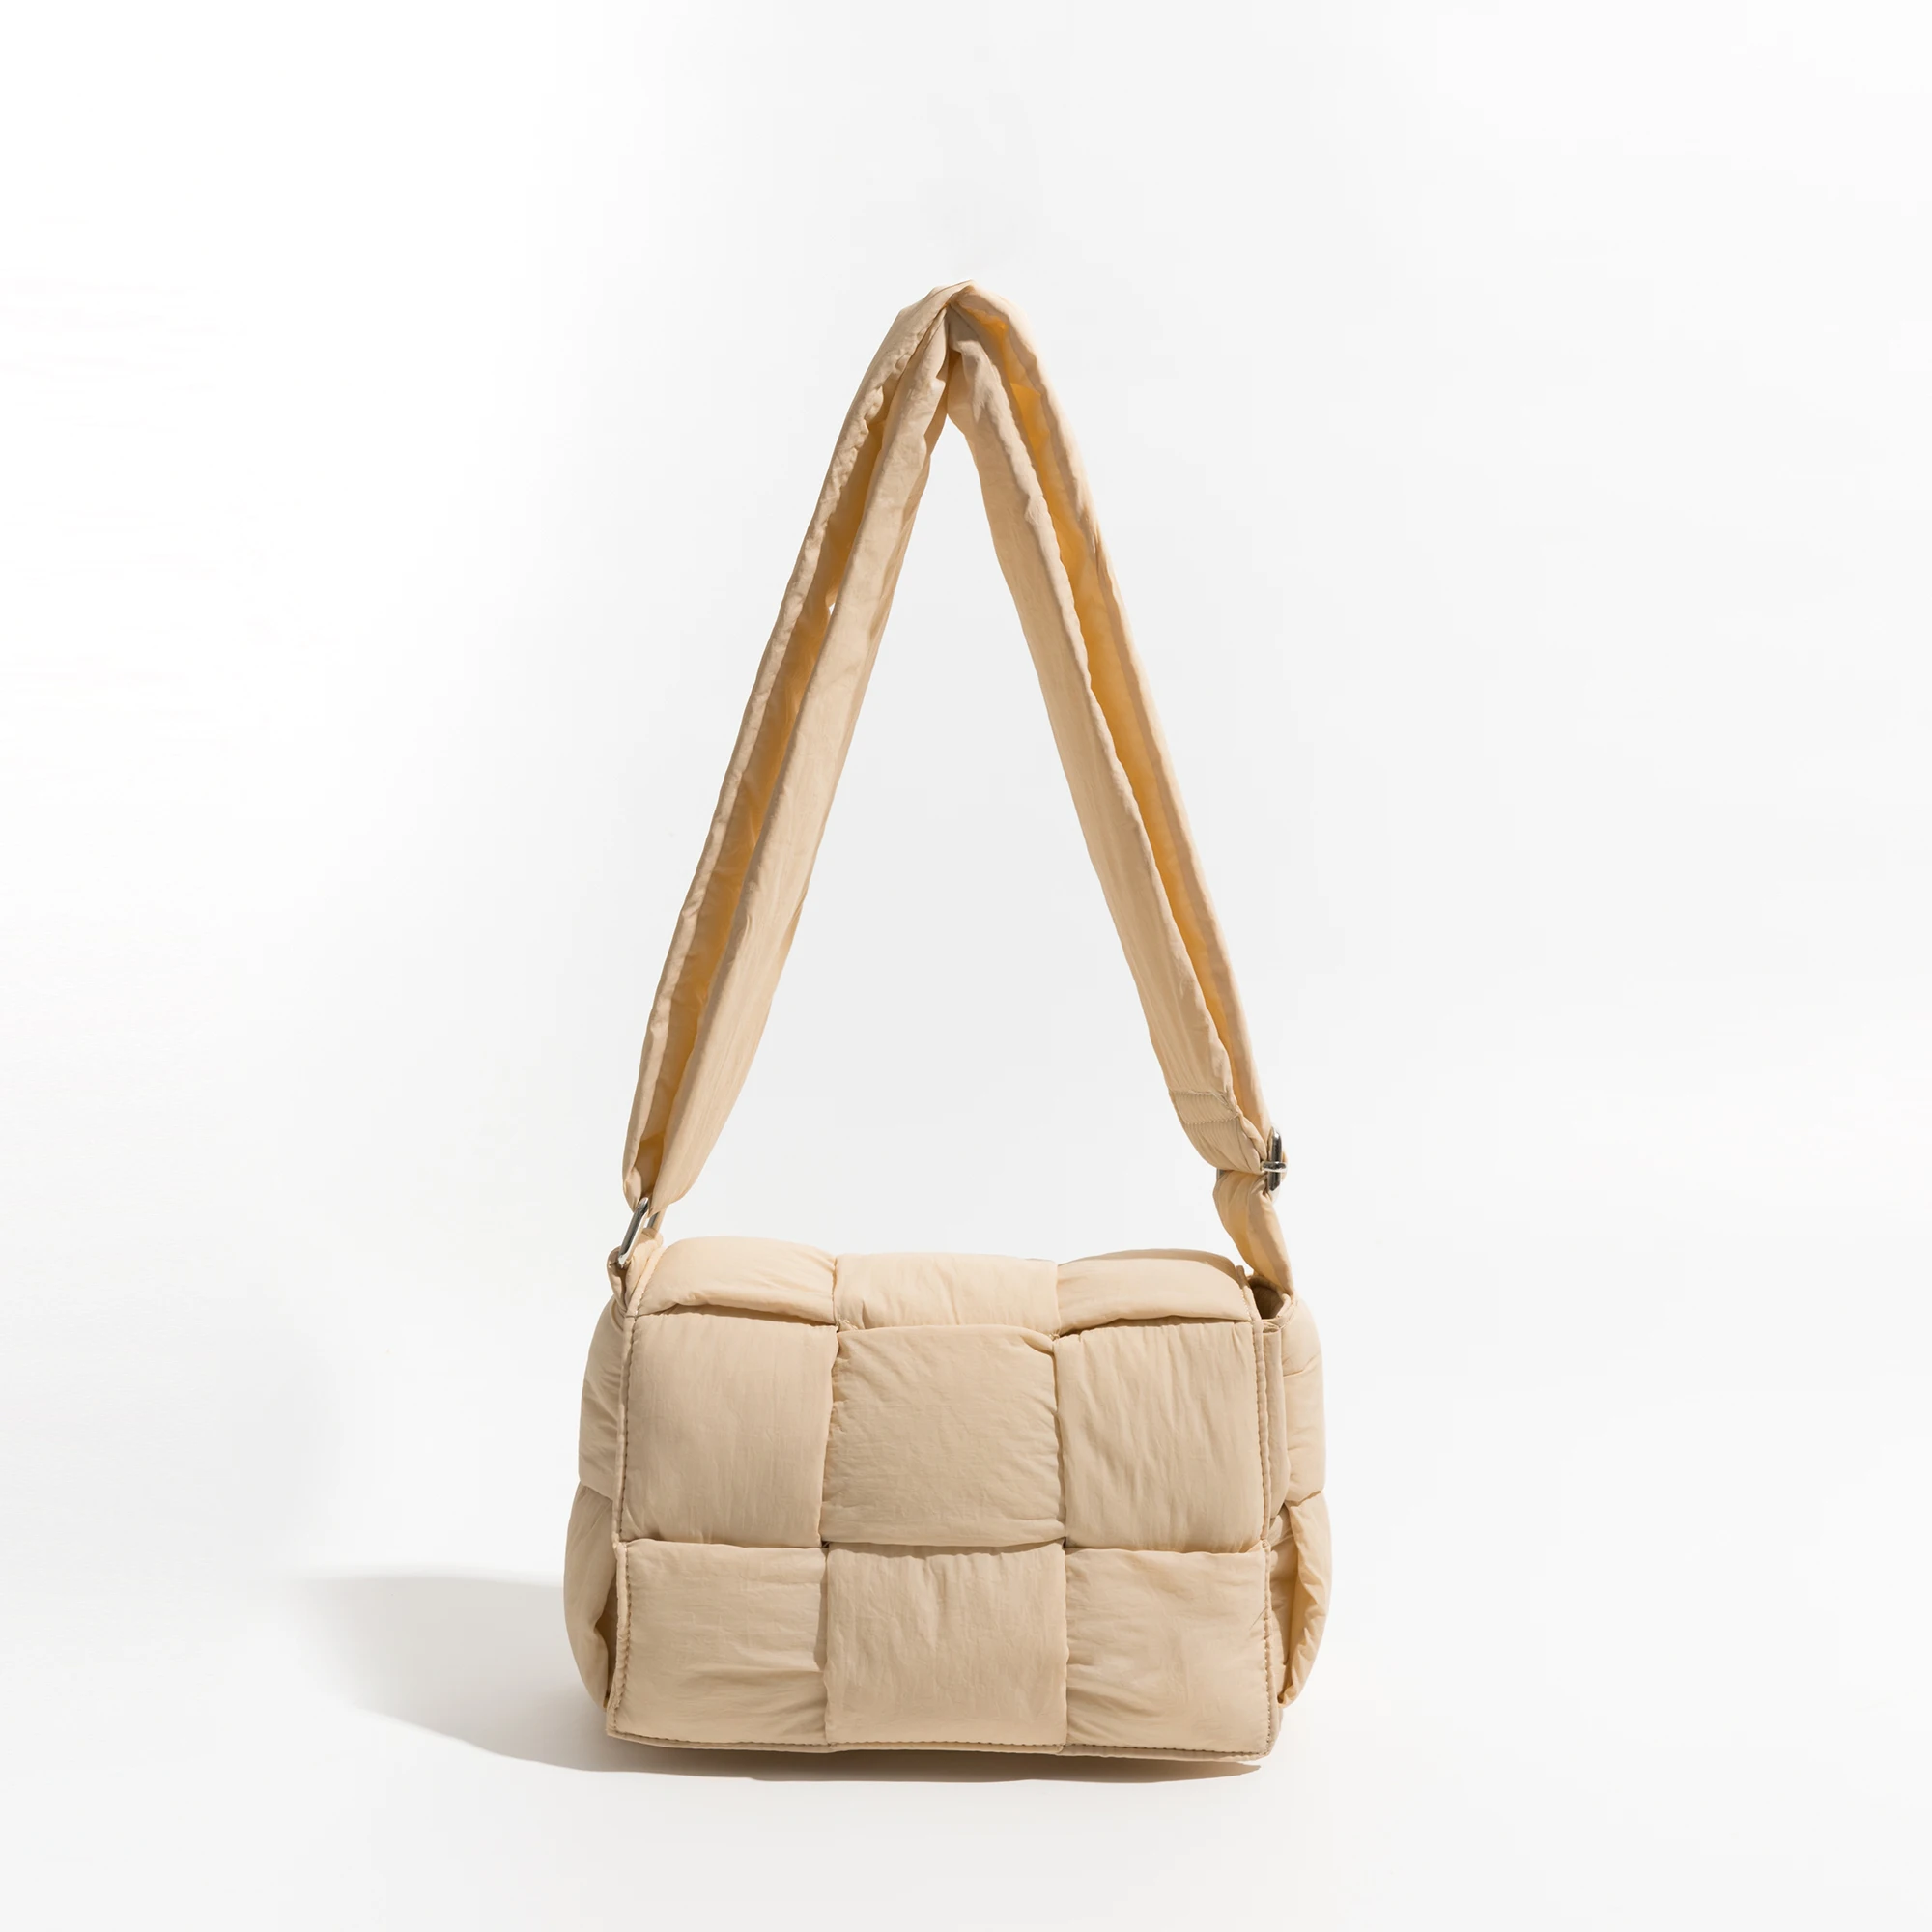 KOKOPEAS Padded Messenger Puffer Bag for Women Handmade Woven Flap Cotto... - $46.29